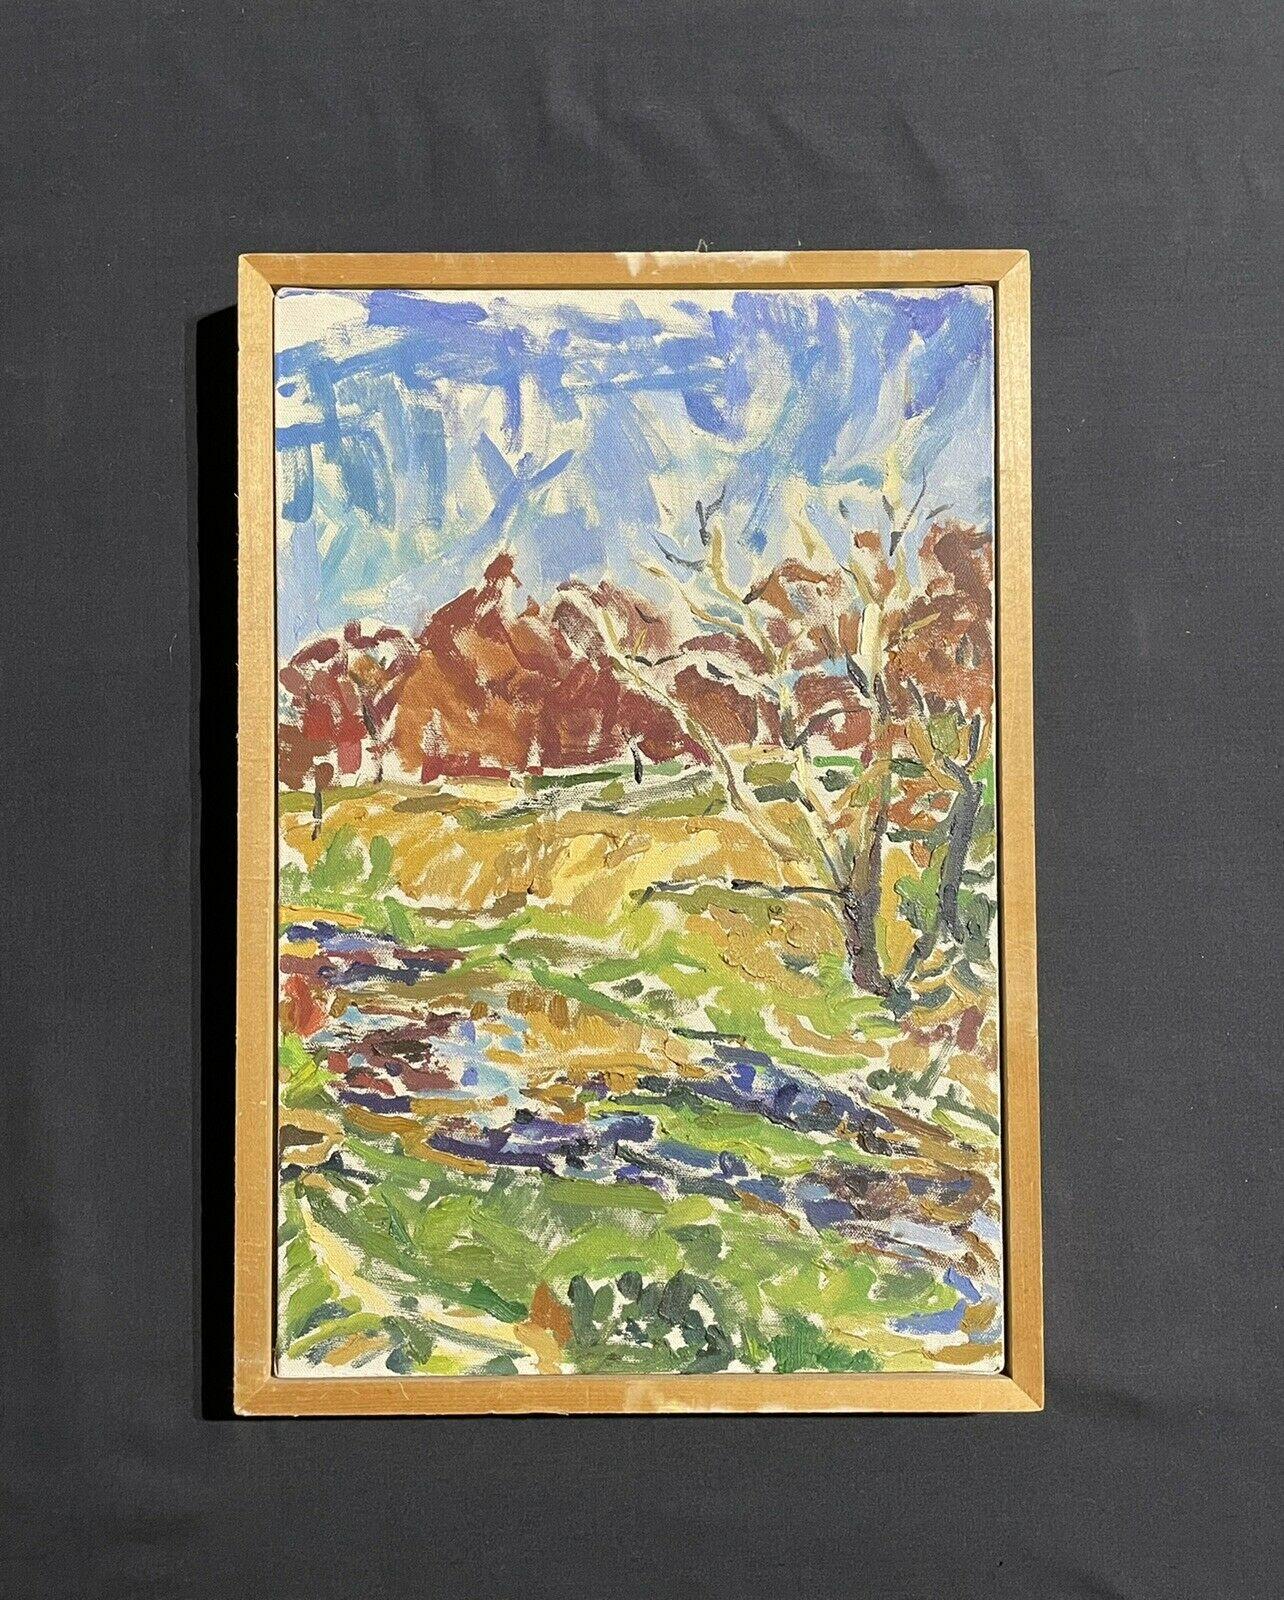 Groß  Impressionistisches Ölgemälde - Bunte fließende Flussssszene (Braun), Landscape Painting, von Douglas Stuart Allen